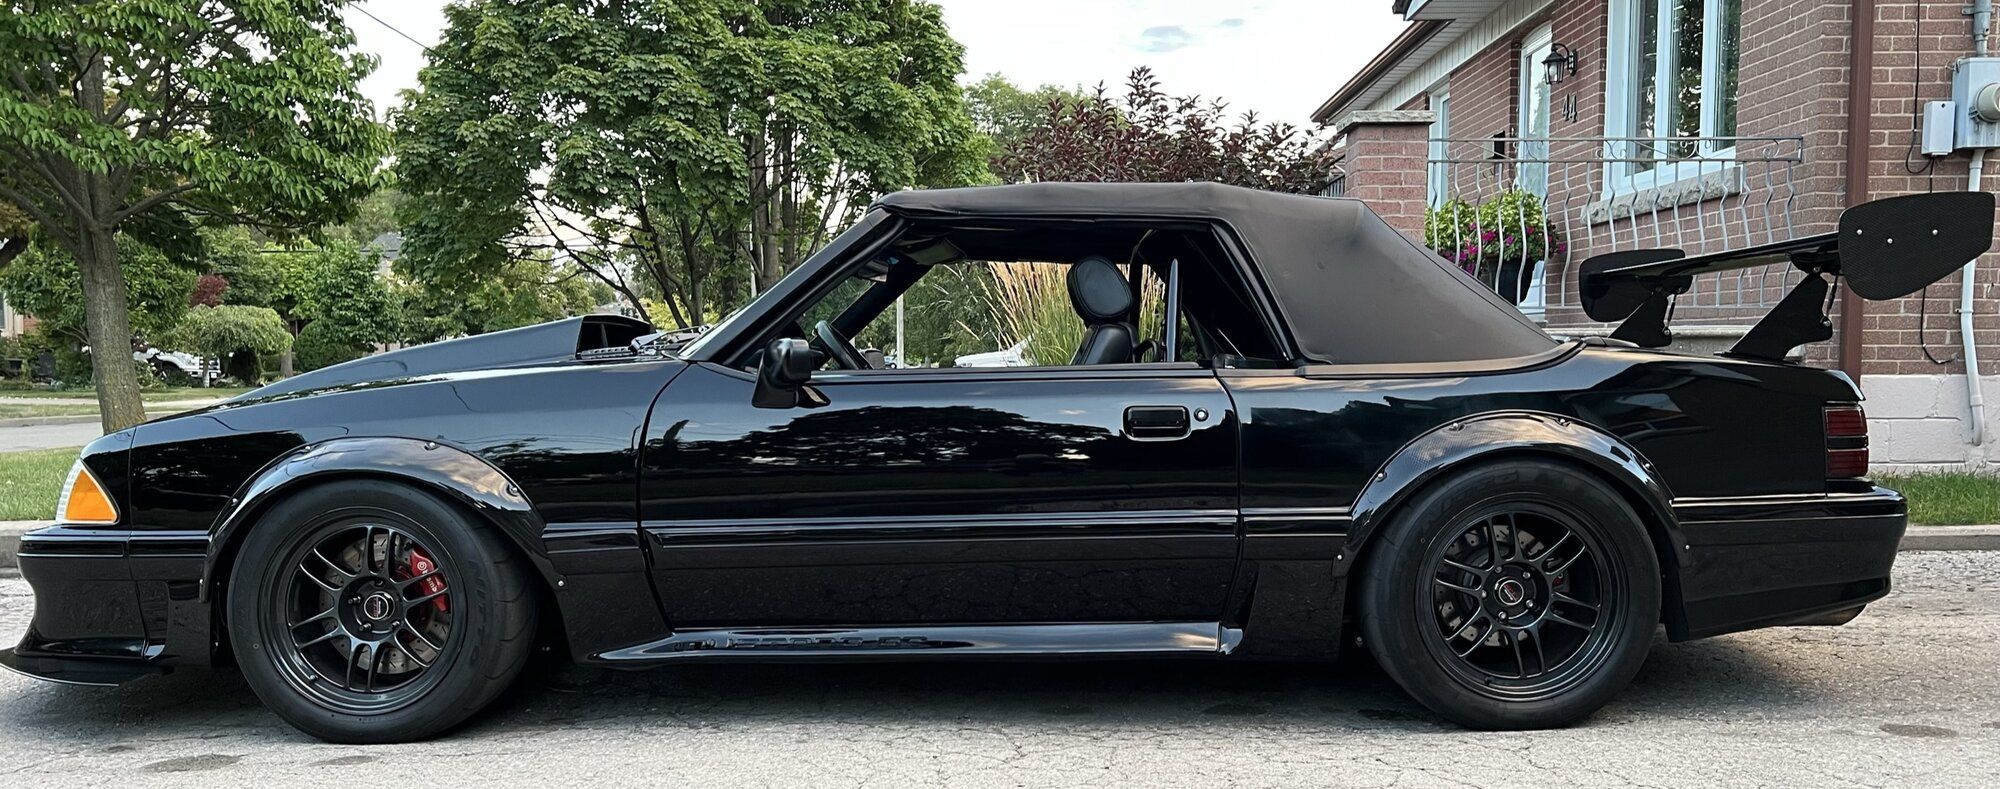 1987 Mustang
(Tu Lowd2)